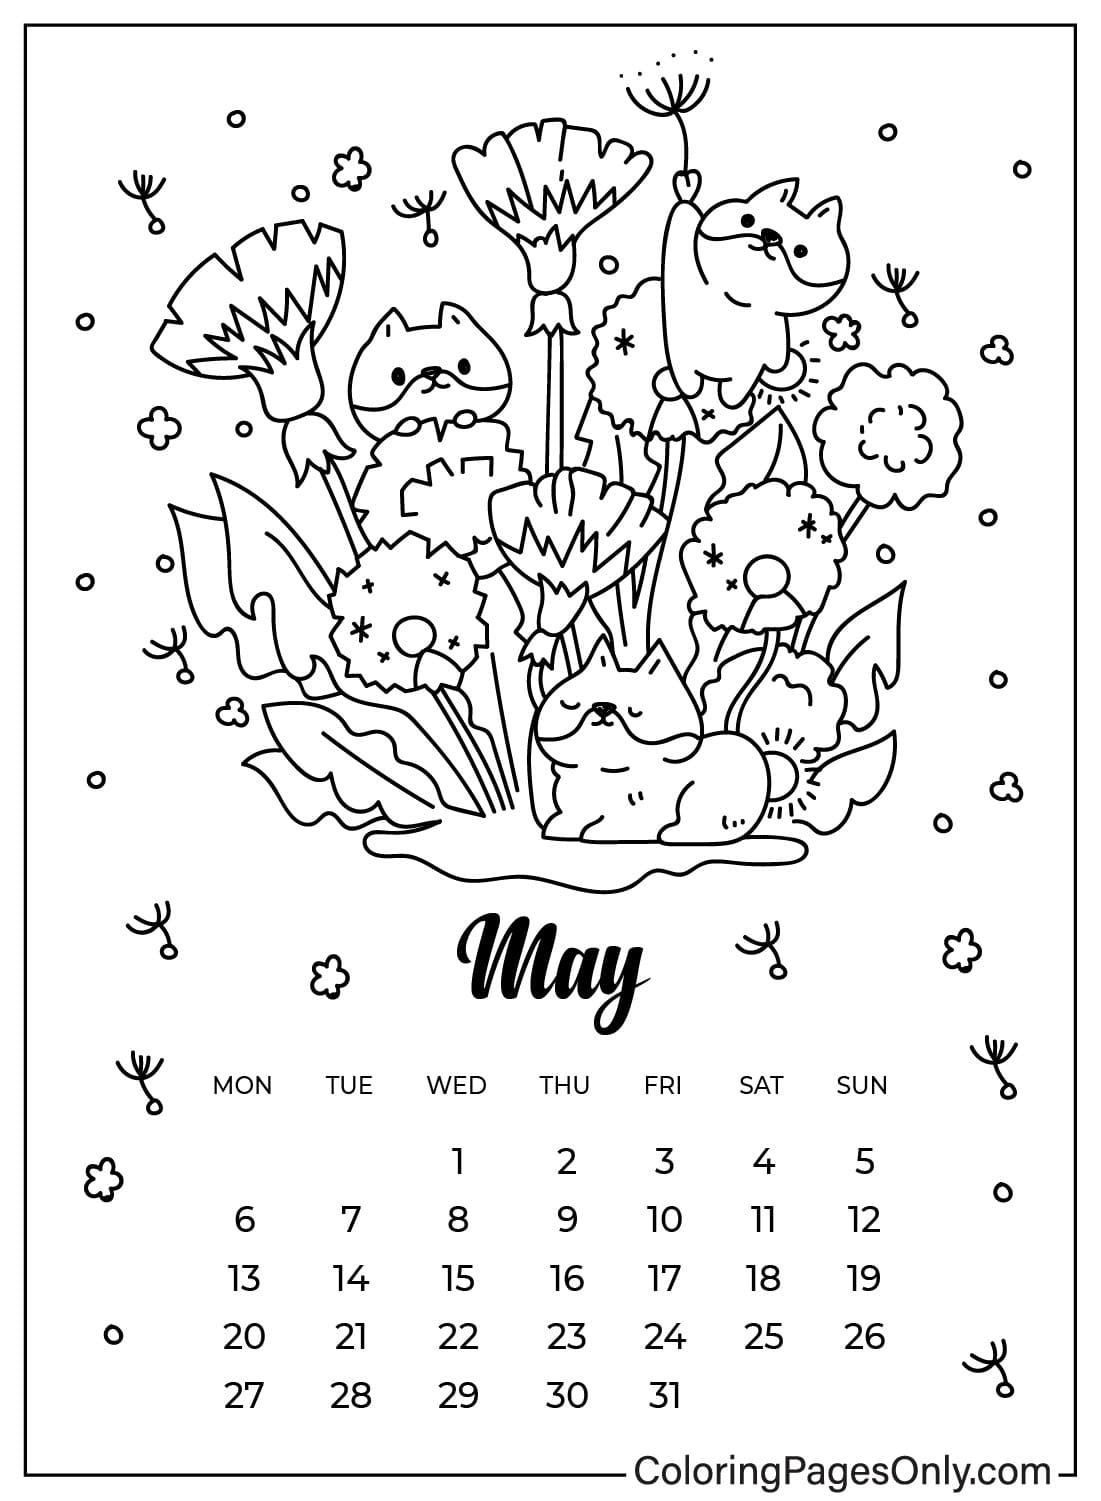 Hoja para colorear del calendario de mayo para niños a partir de mayo